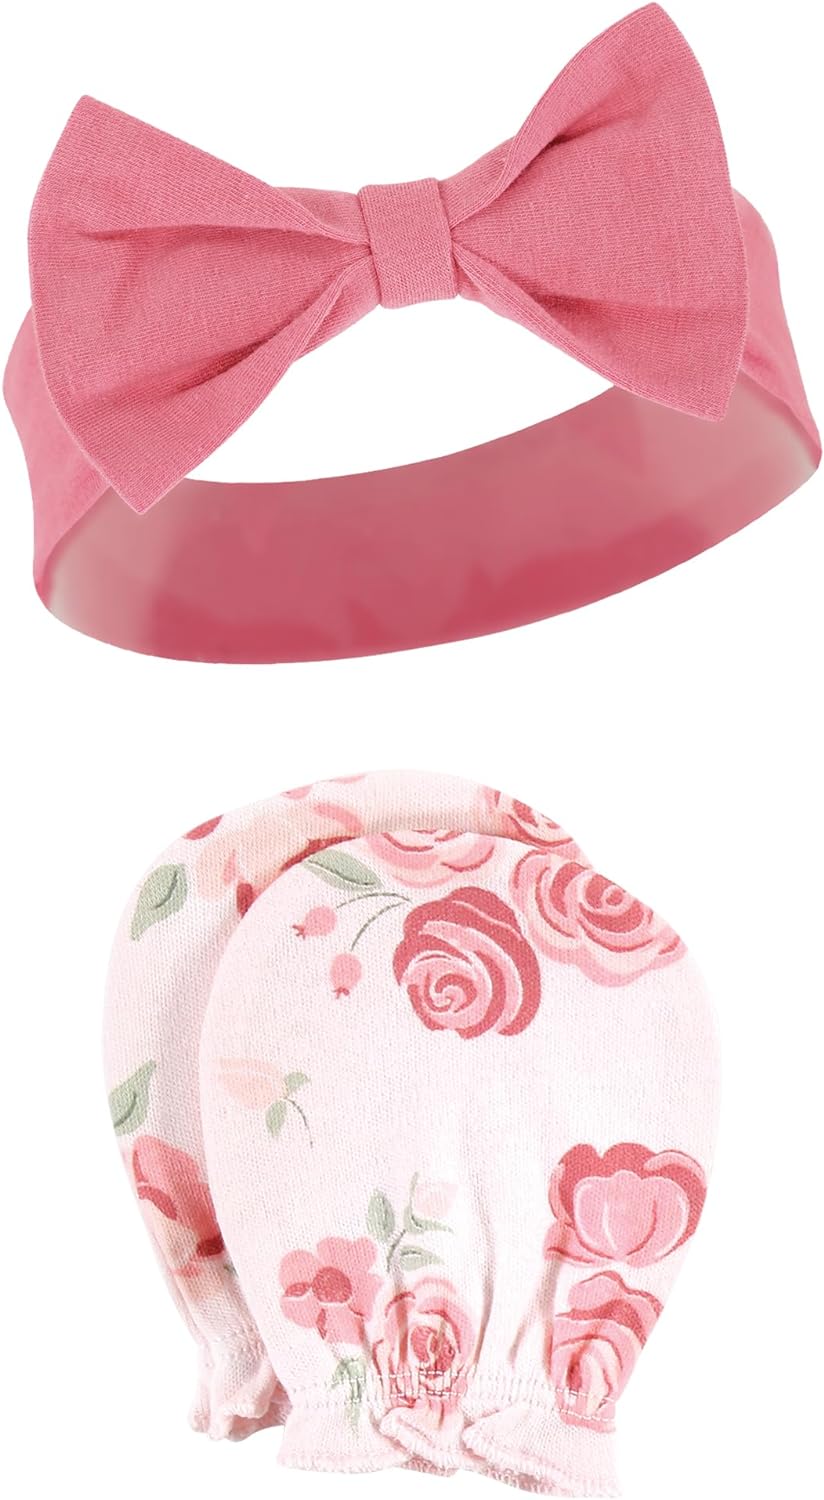 Hudson Baby Baby Girls' Cotton Headband and Scratch Mitten Set